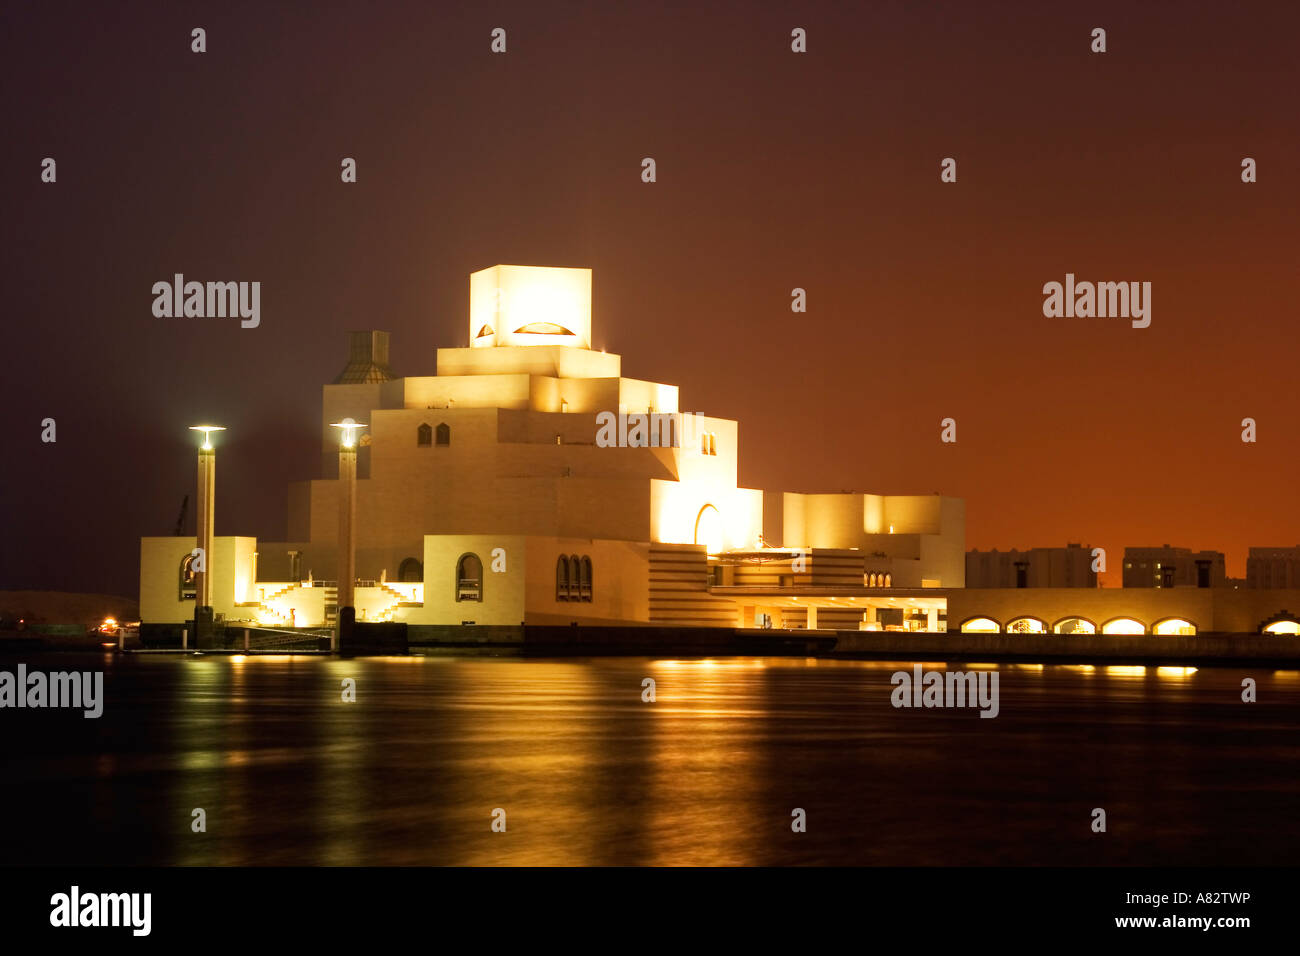 Il museo di arte islamica dal famoso architetto io m. Pei al lungomare di Doha corniche di notte Foto Stock